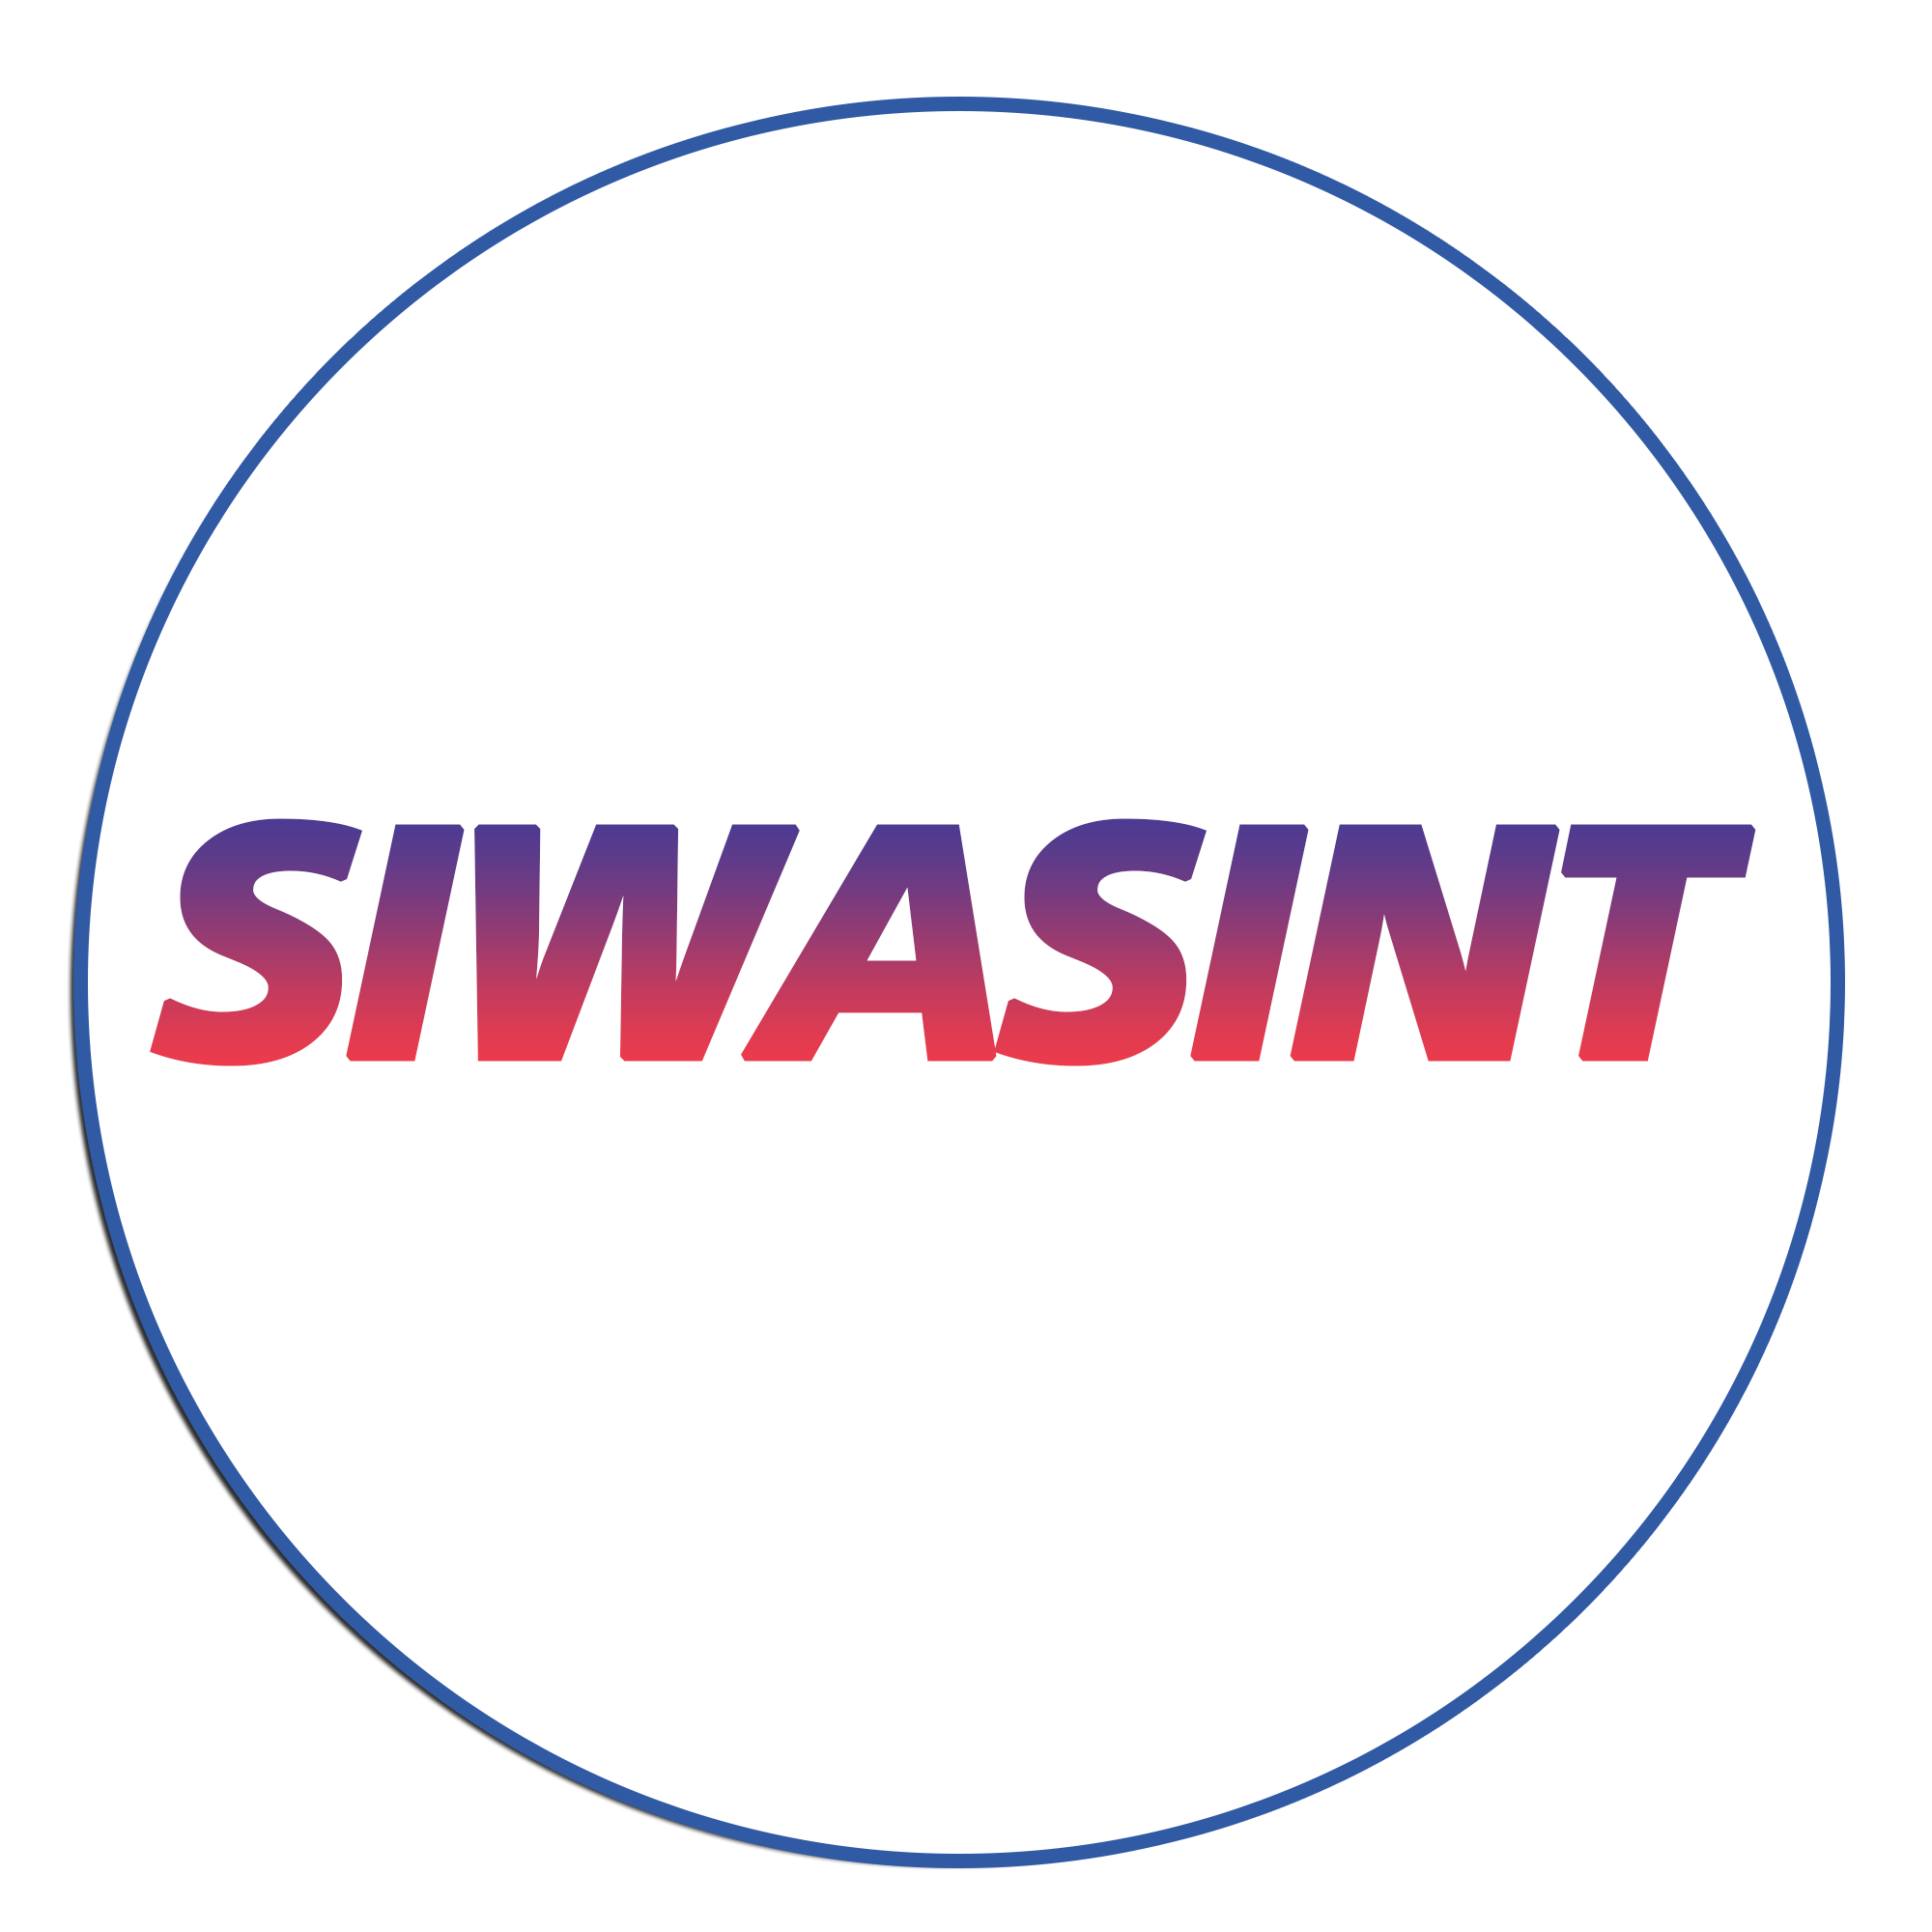 SIWASINT